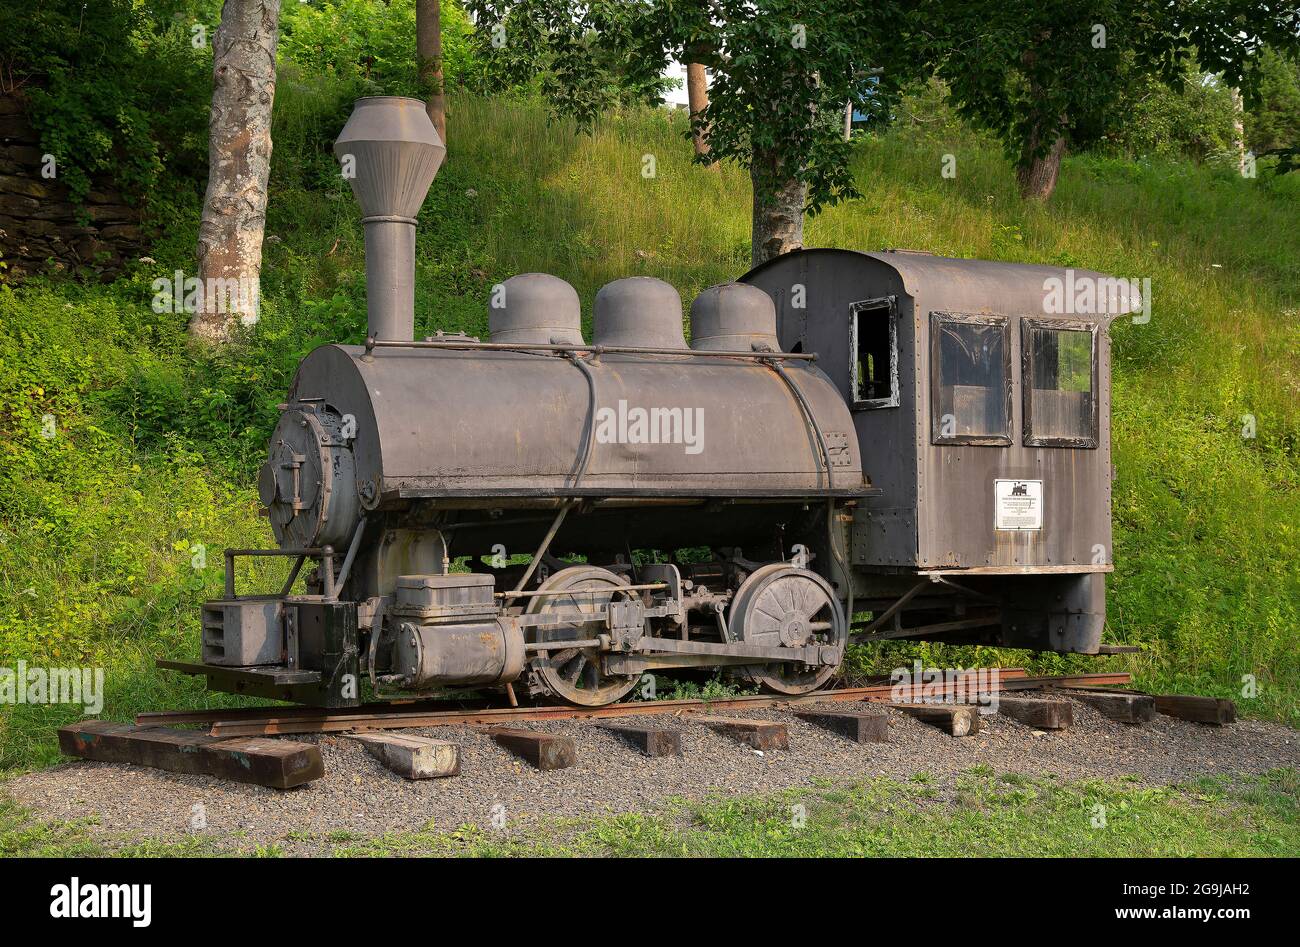 Eine vulkanische Dampflokomotive, die in Rockport Harbor, Rockport, Maine, USA, ausgestellt ist und in Wilkes Barr, PA, USA, gebaut wurde Stockfoto